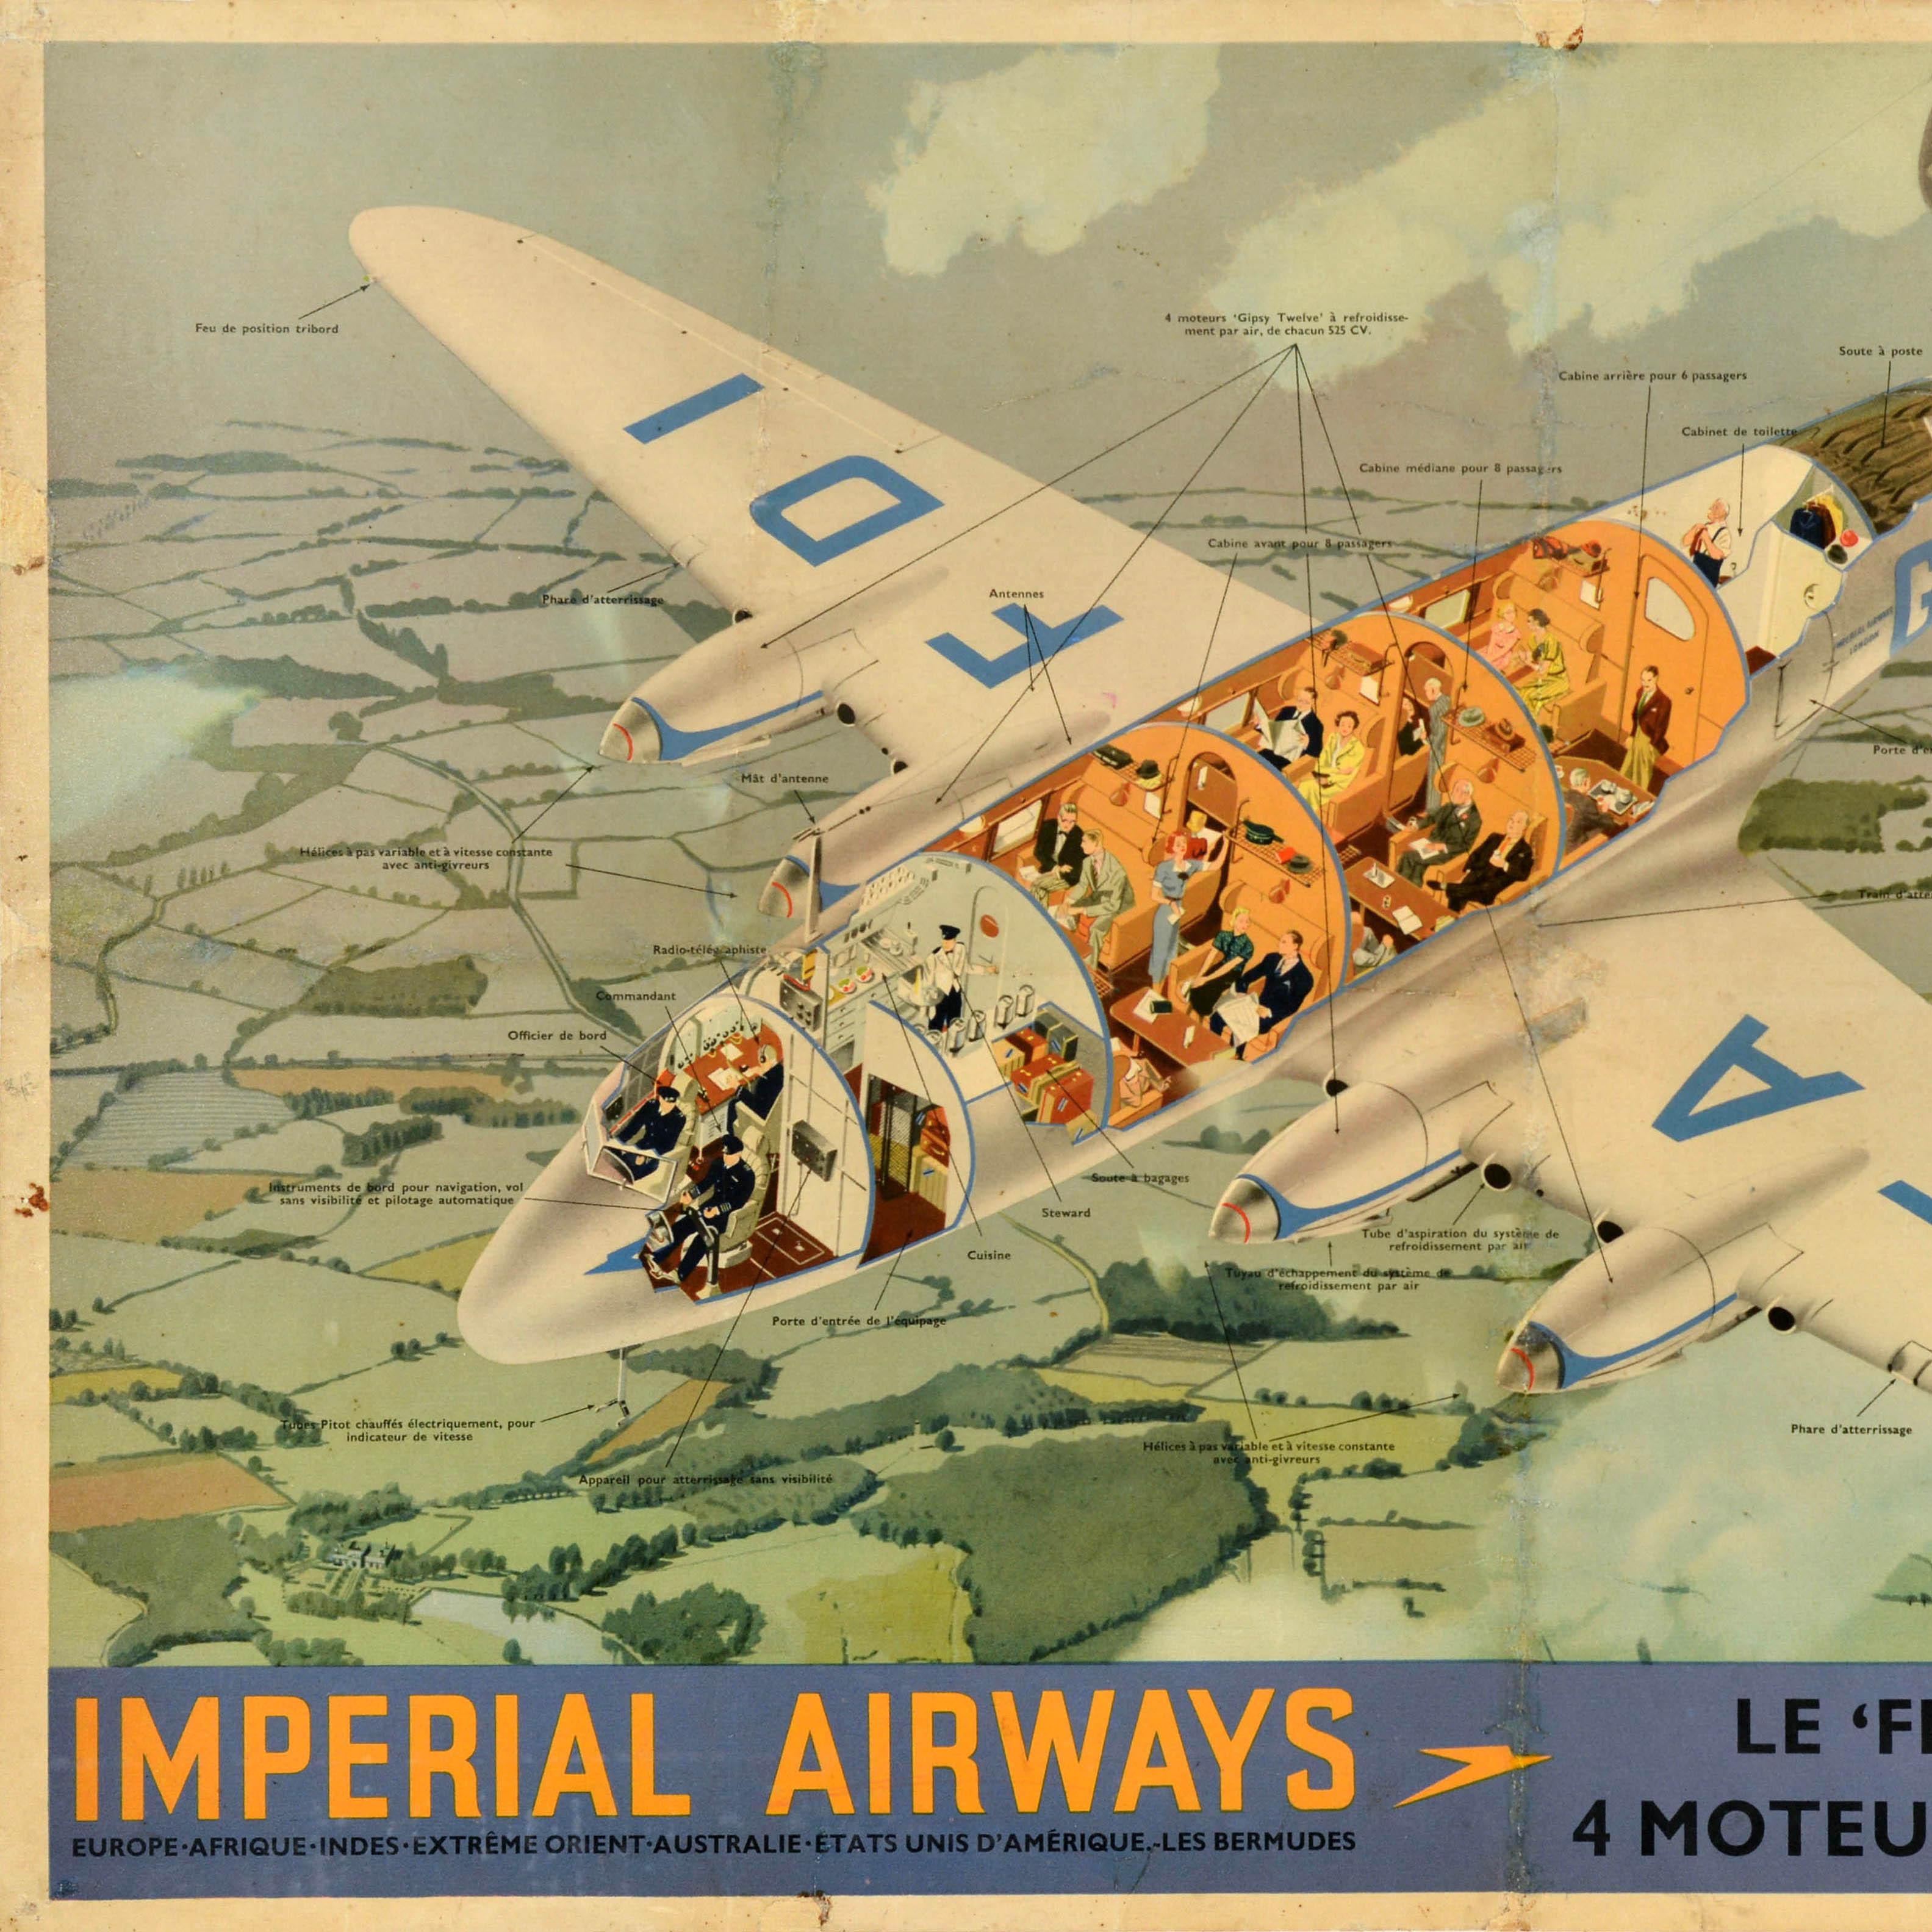 Original vintage travel advertising poster - Imperial Airways Le Frobisher Europe Afrique Indes Extreme Orient Australie Etats Unis d'Amerique Les Bermudes le plus rapide des avions de ligne Anglais 4 moteurs rapidite et confort / Britain's fastest